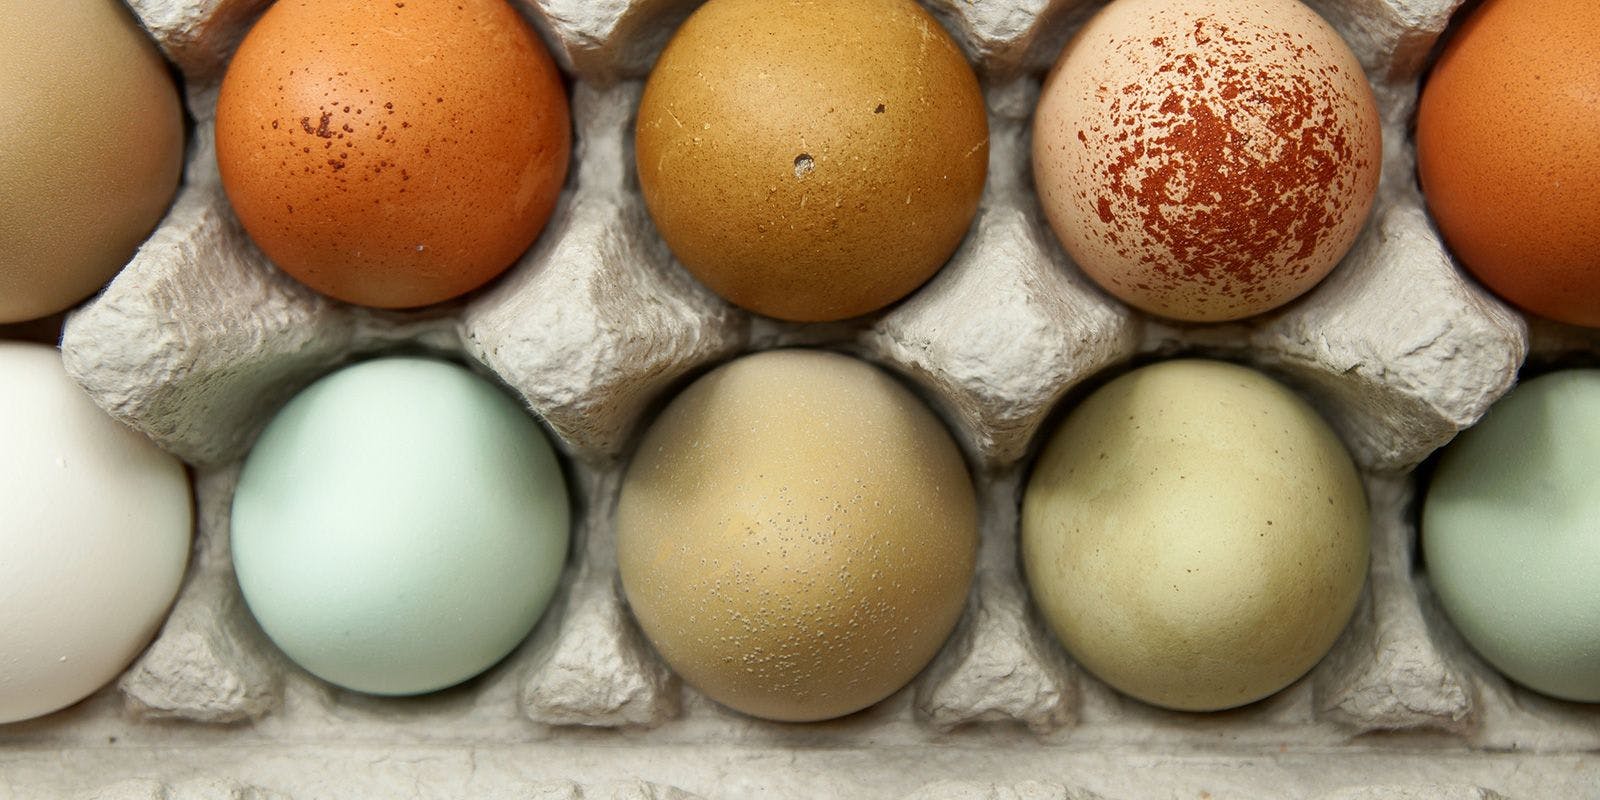 A carton of colorful eggs.